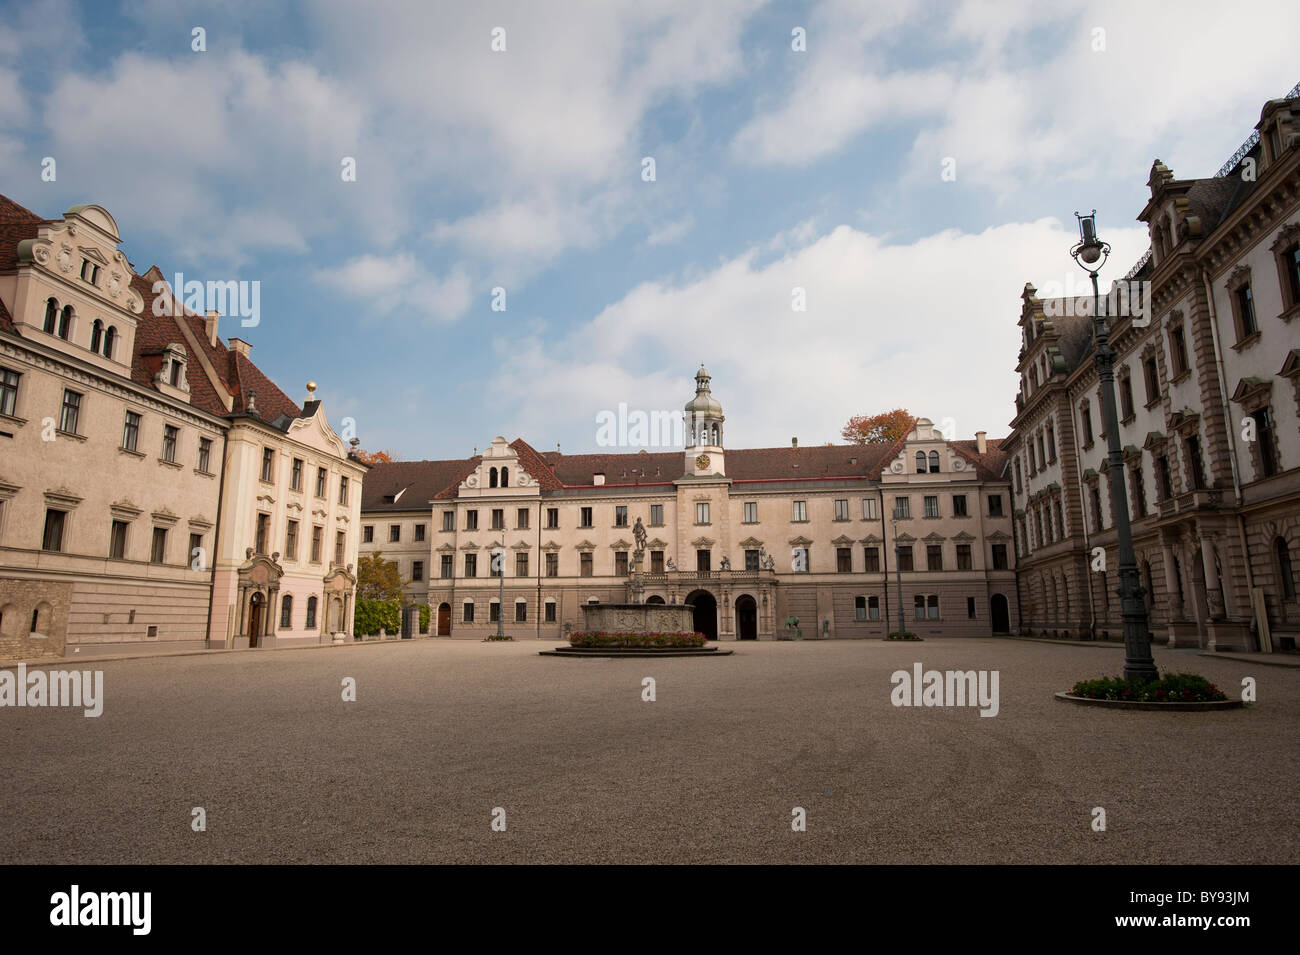 Palace de Saint Emmeram, château de Thurn et Taxis, Regensburg, Bavière, Allemagne, Europe Banque D'Images